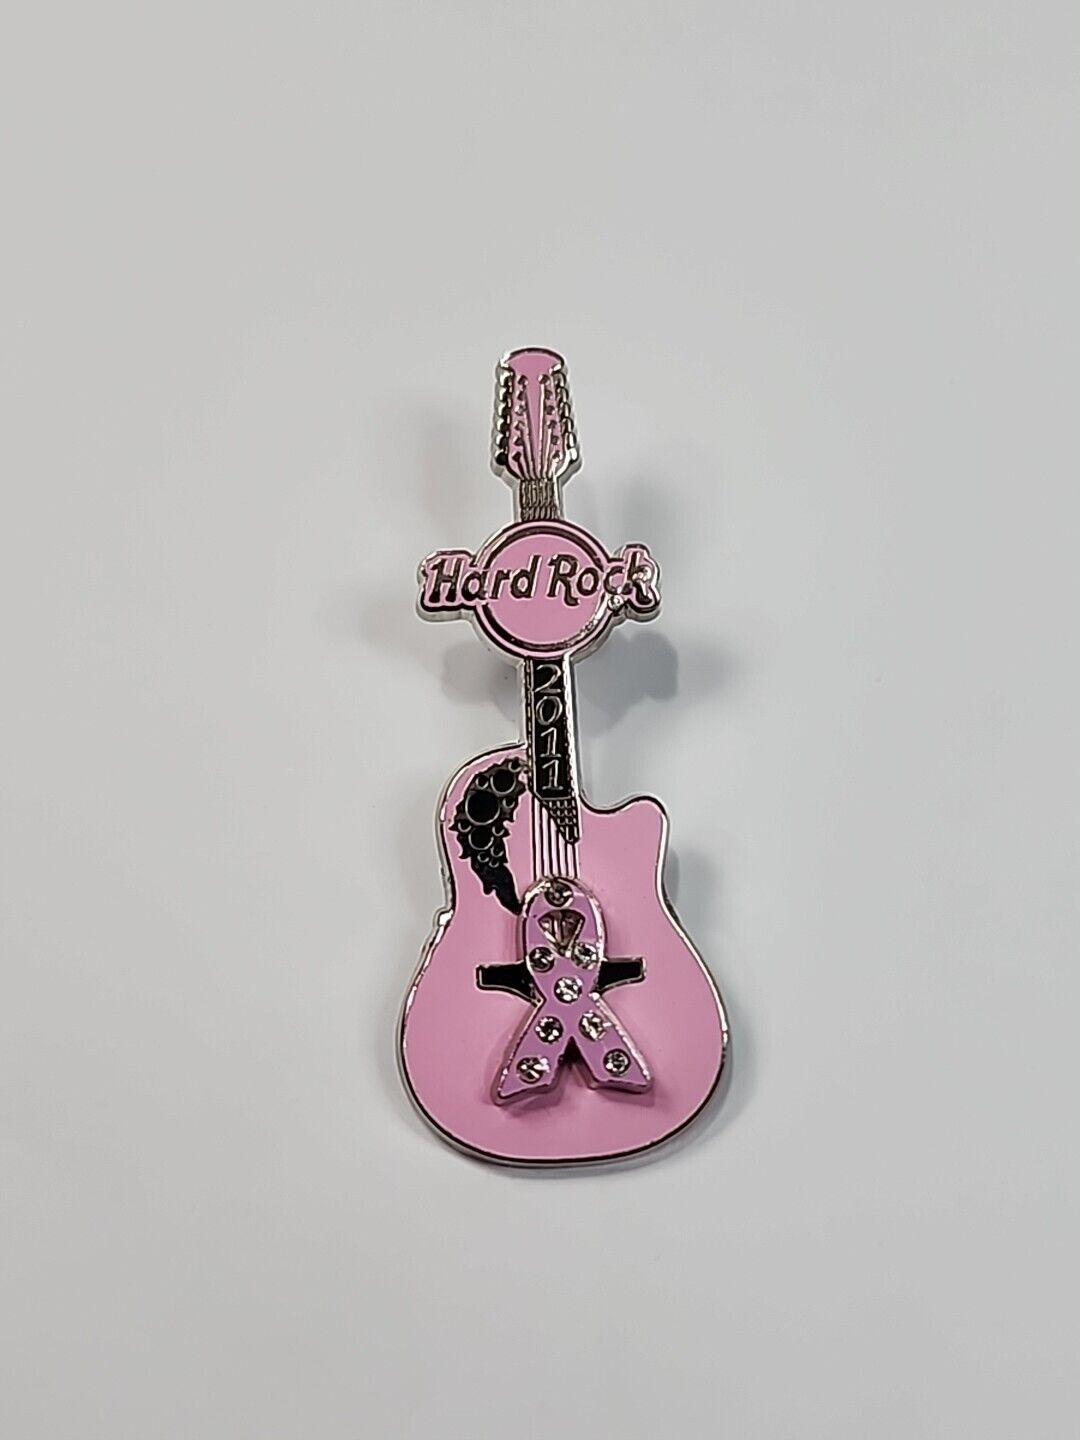 Hard Rock Cafe Breast Cancer Awareness Lapel Pin 2011